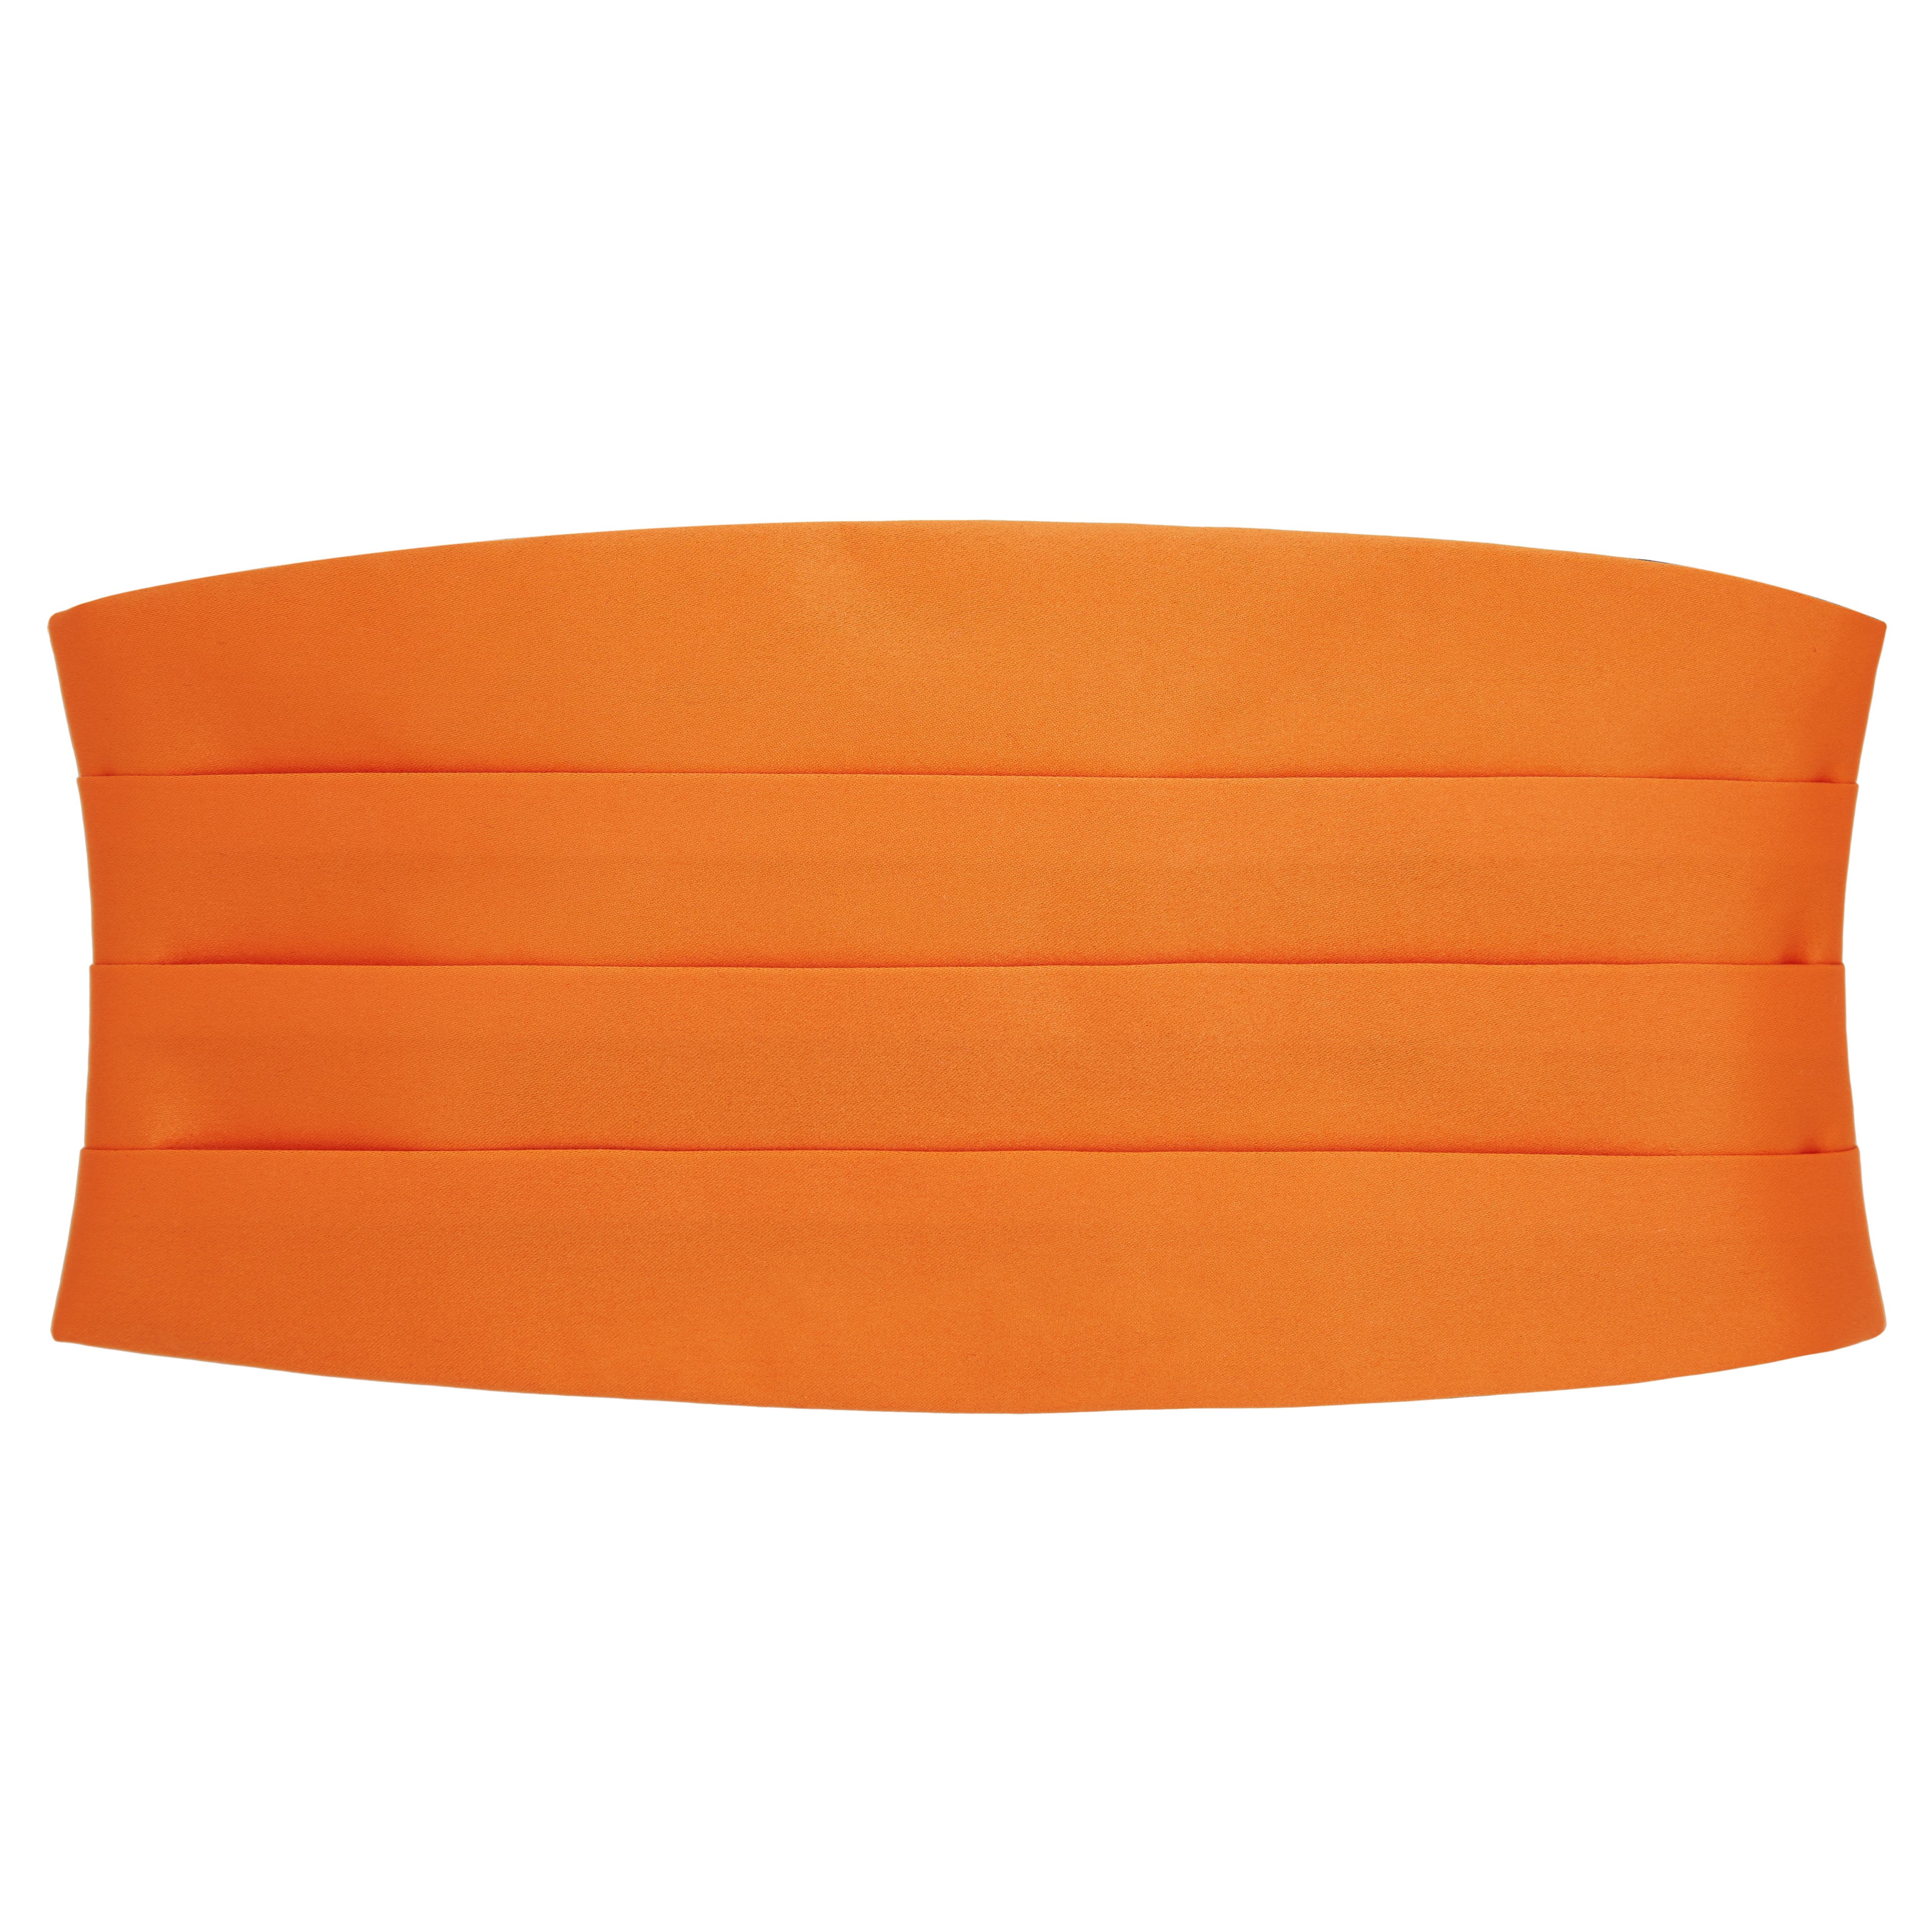 Základná šerpa vo výraznej oranžovej farbe